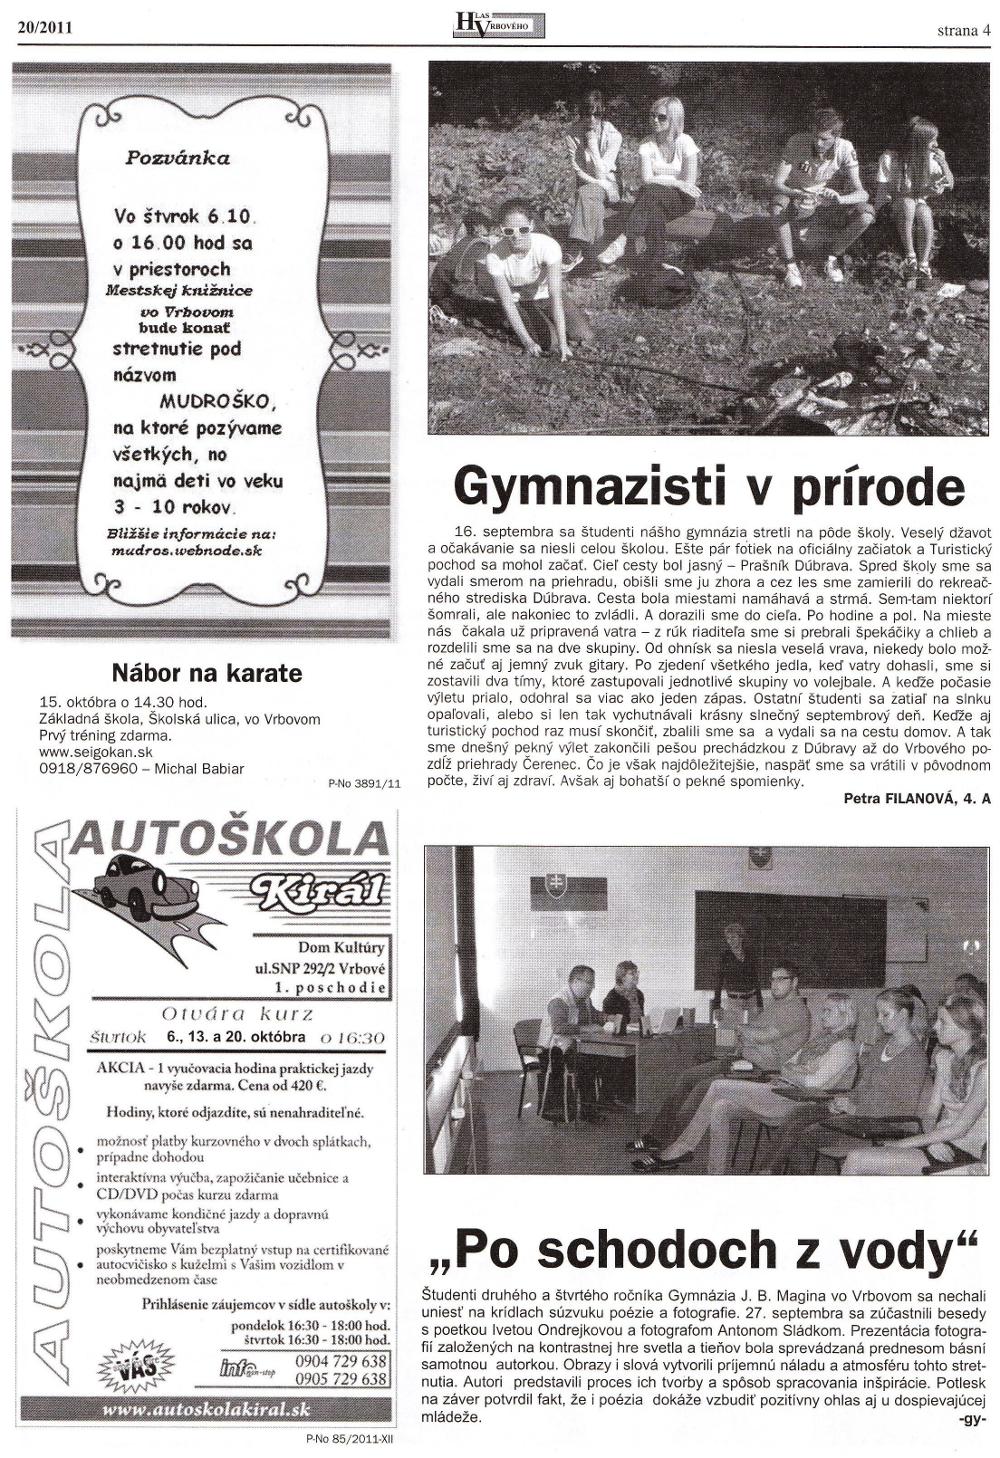 Hlas Vrbového 20/2011, strana 4